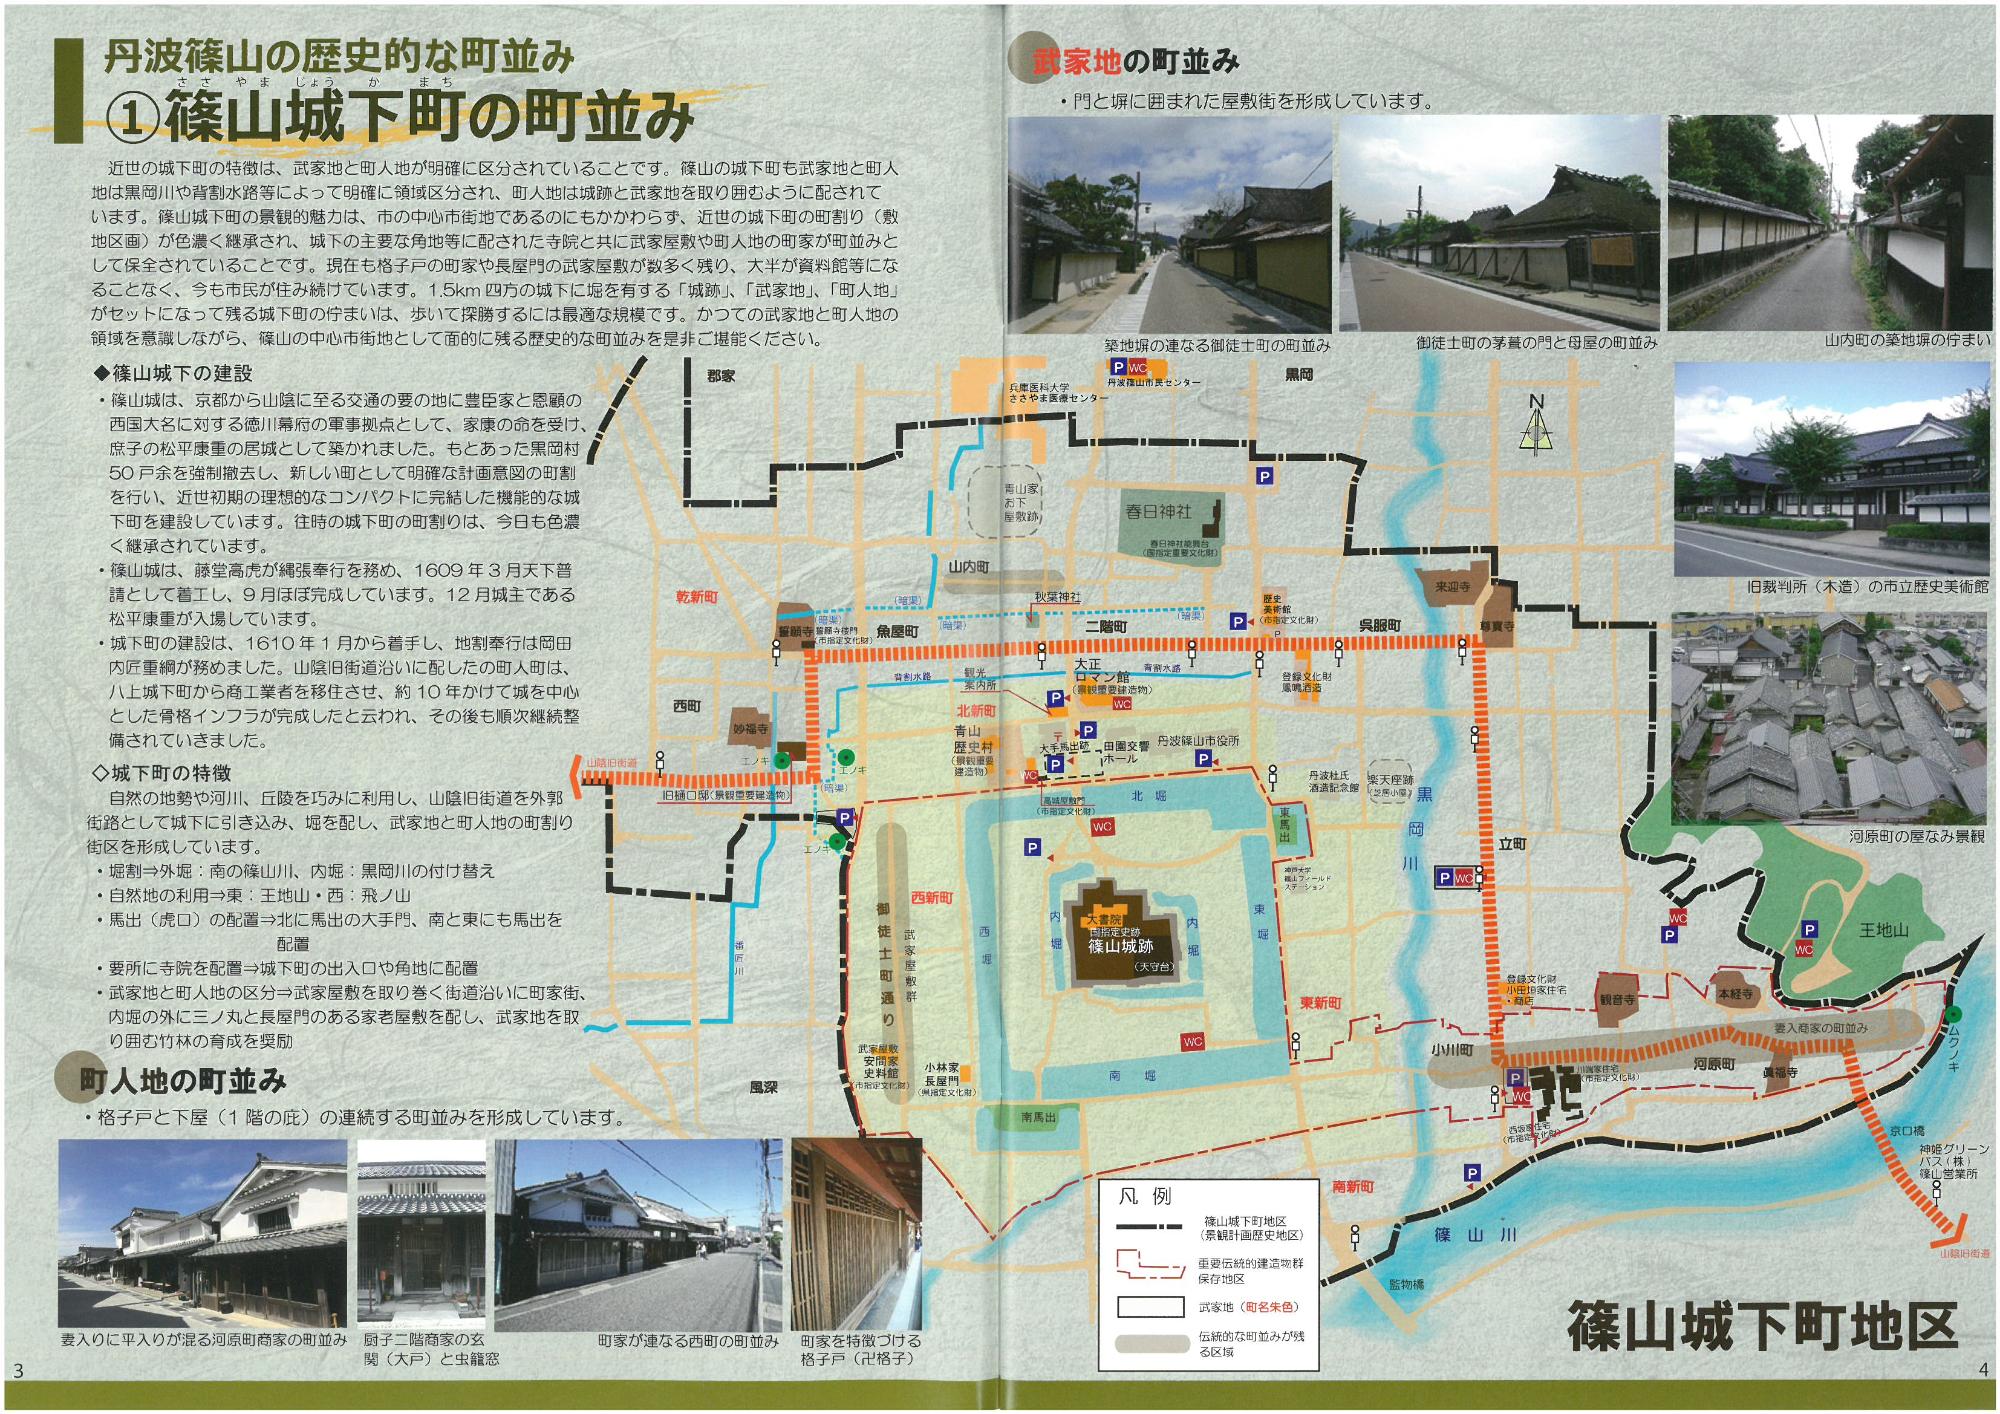 見開きで篠山城下町の町並みを紹介しているページ。地図と町並みの写真、説明が書いてある。